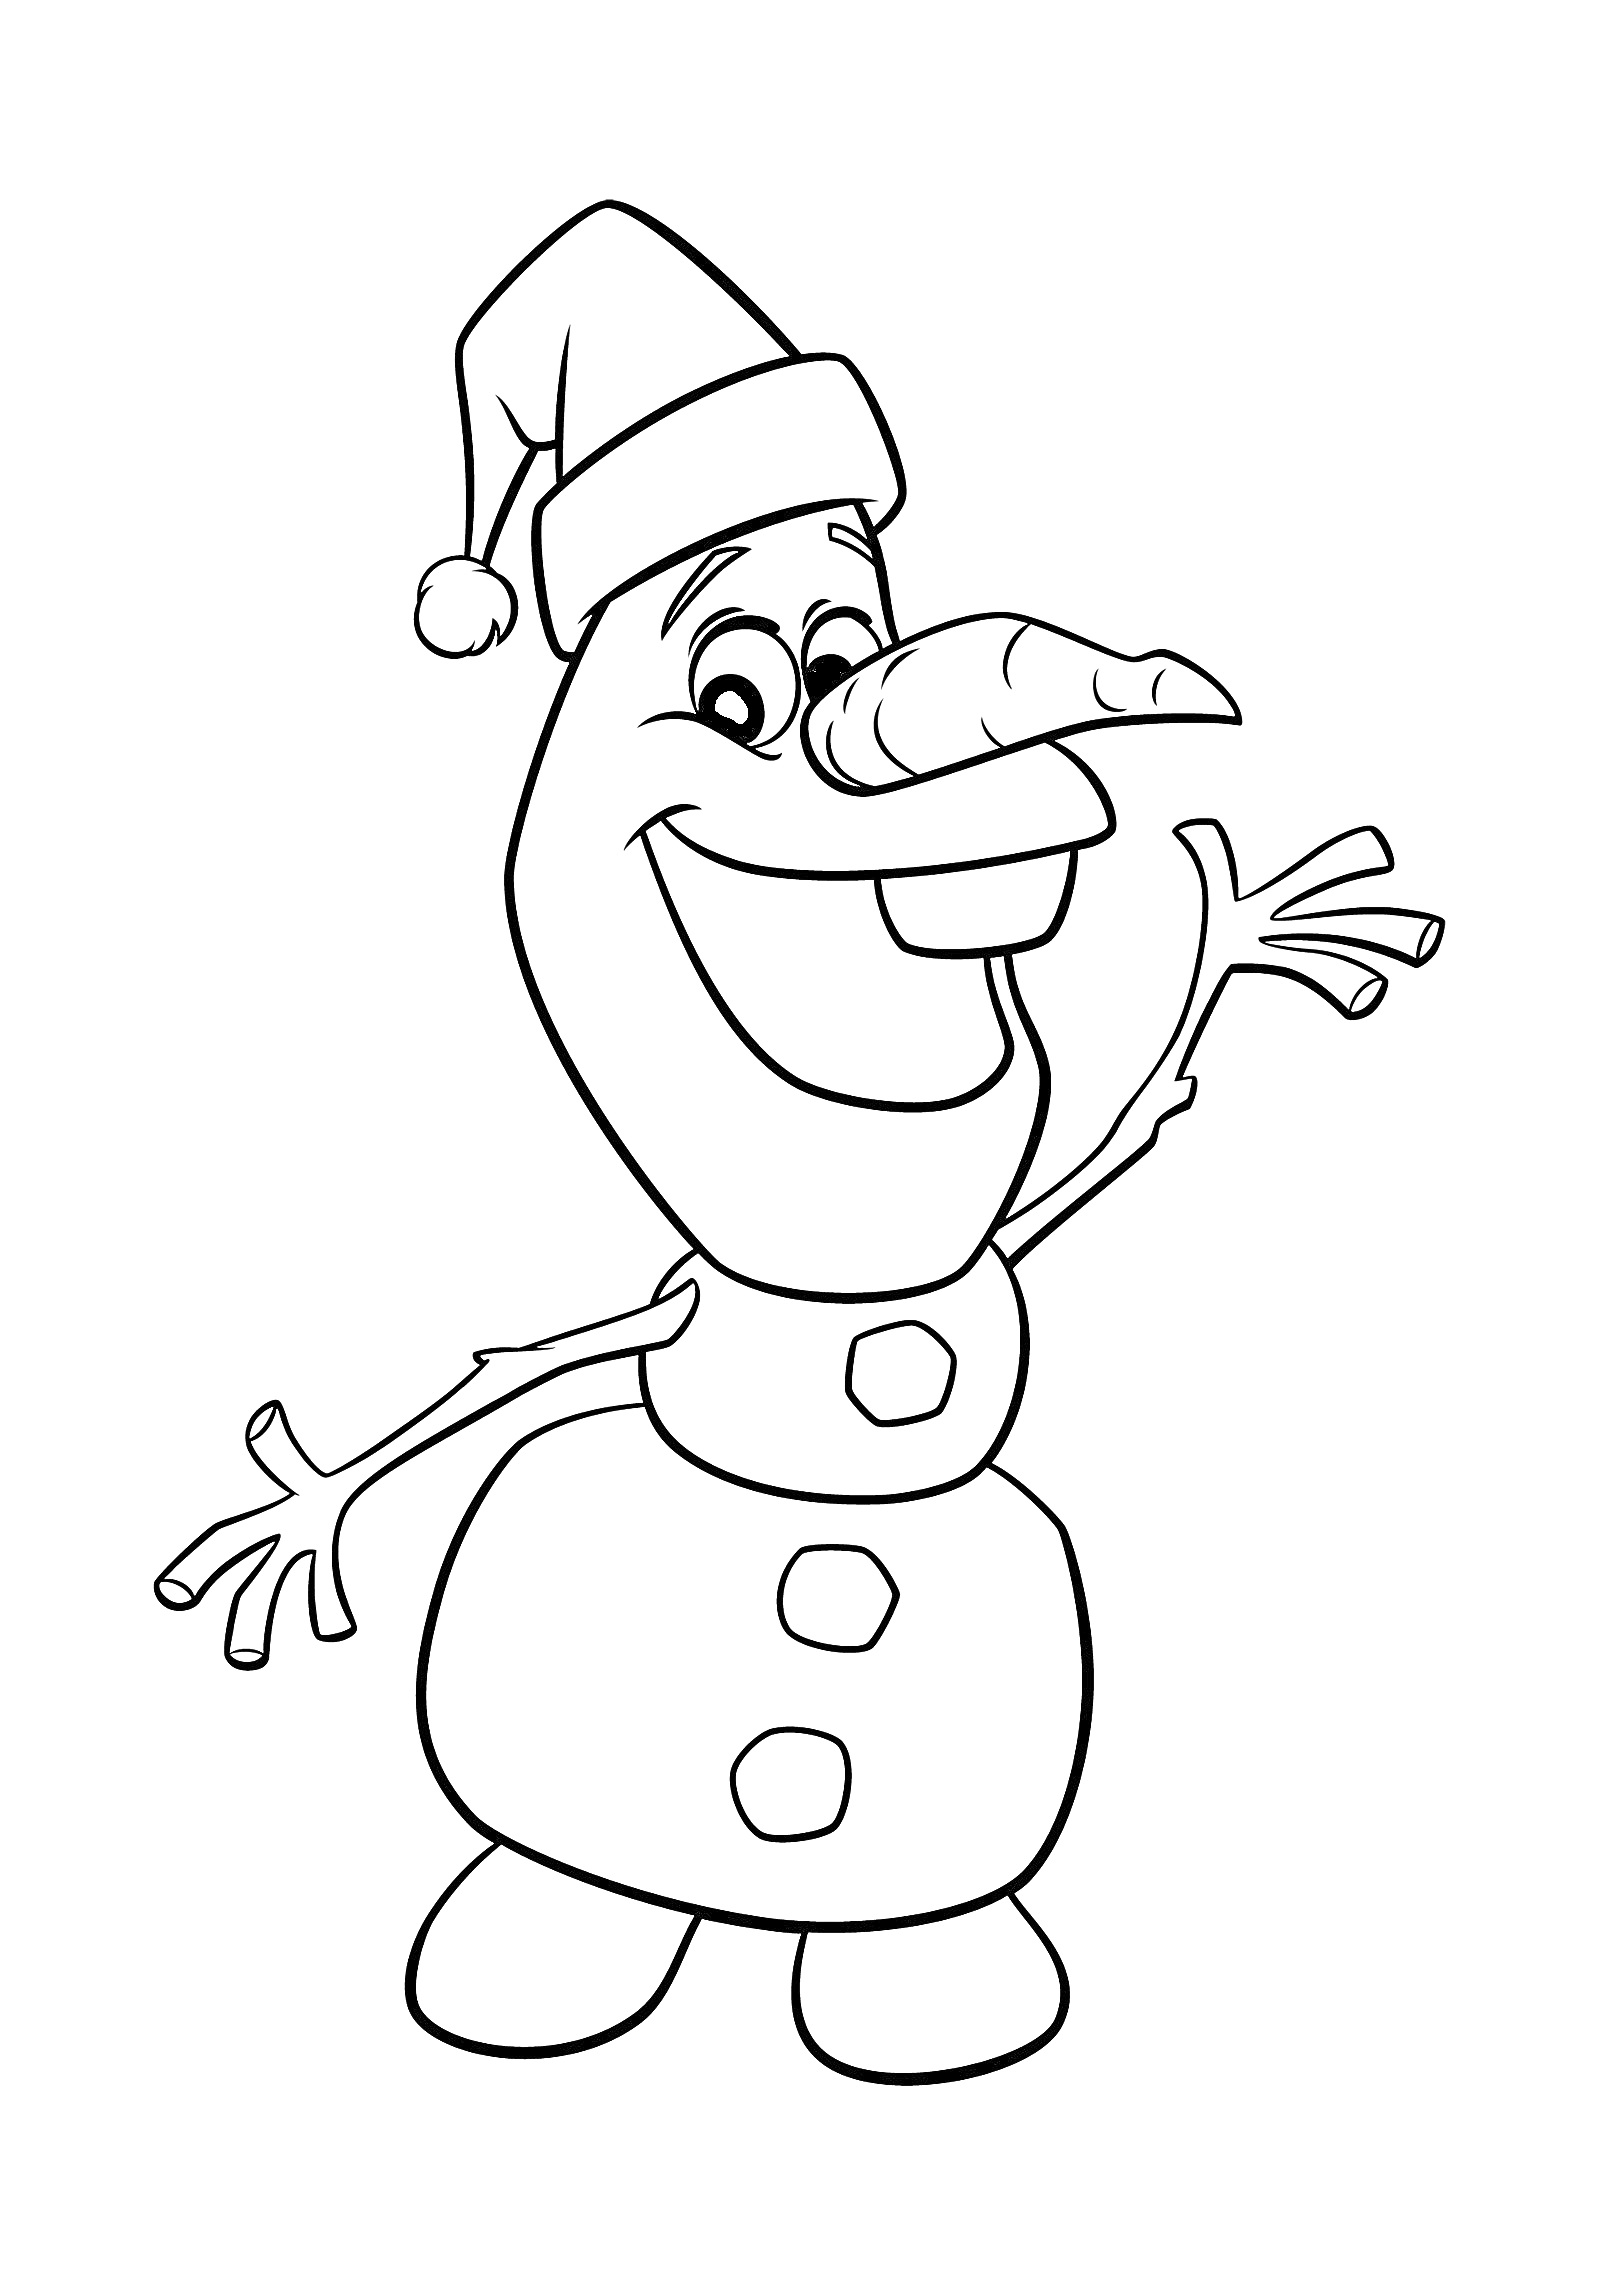 Раскраска Снеговик в шапочке, улыбающийся, с поднятыми руками и пуговицами на животе